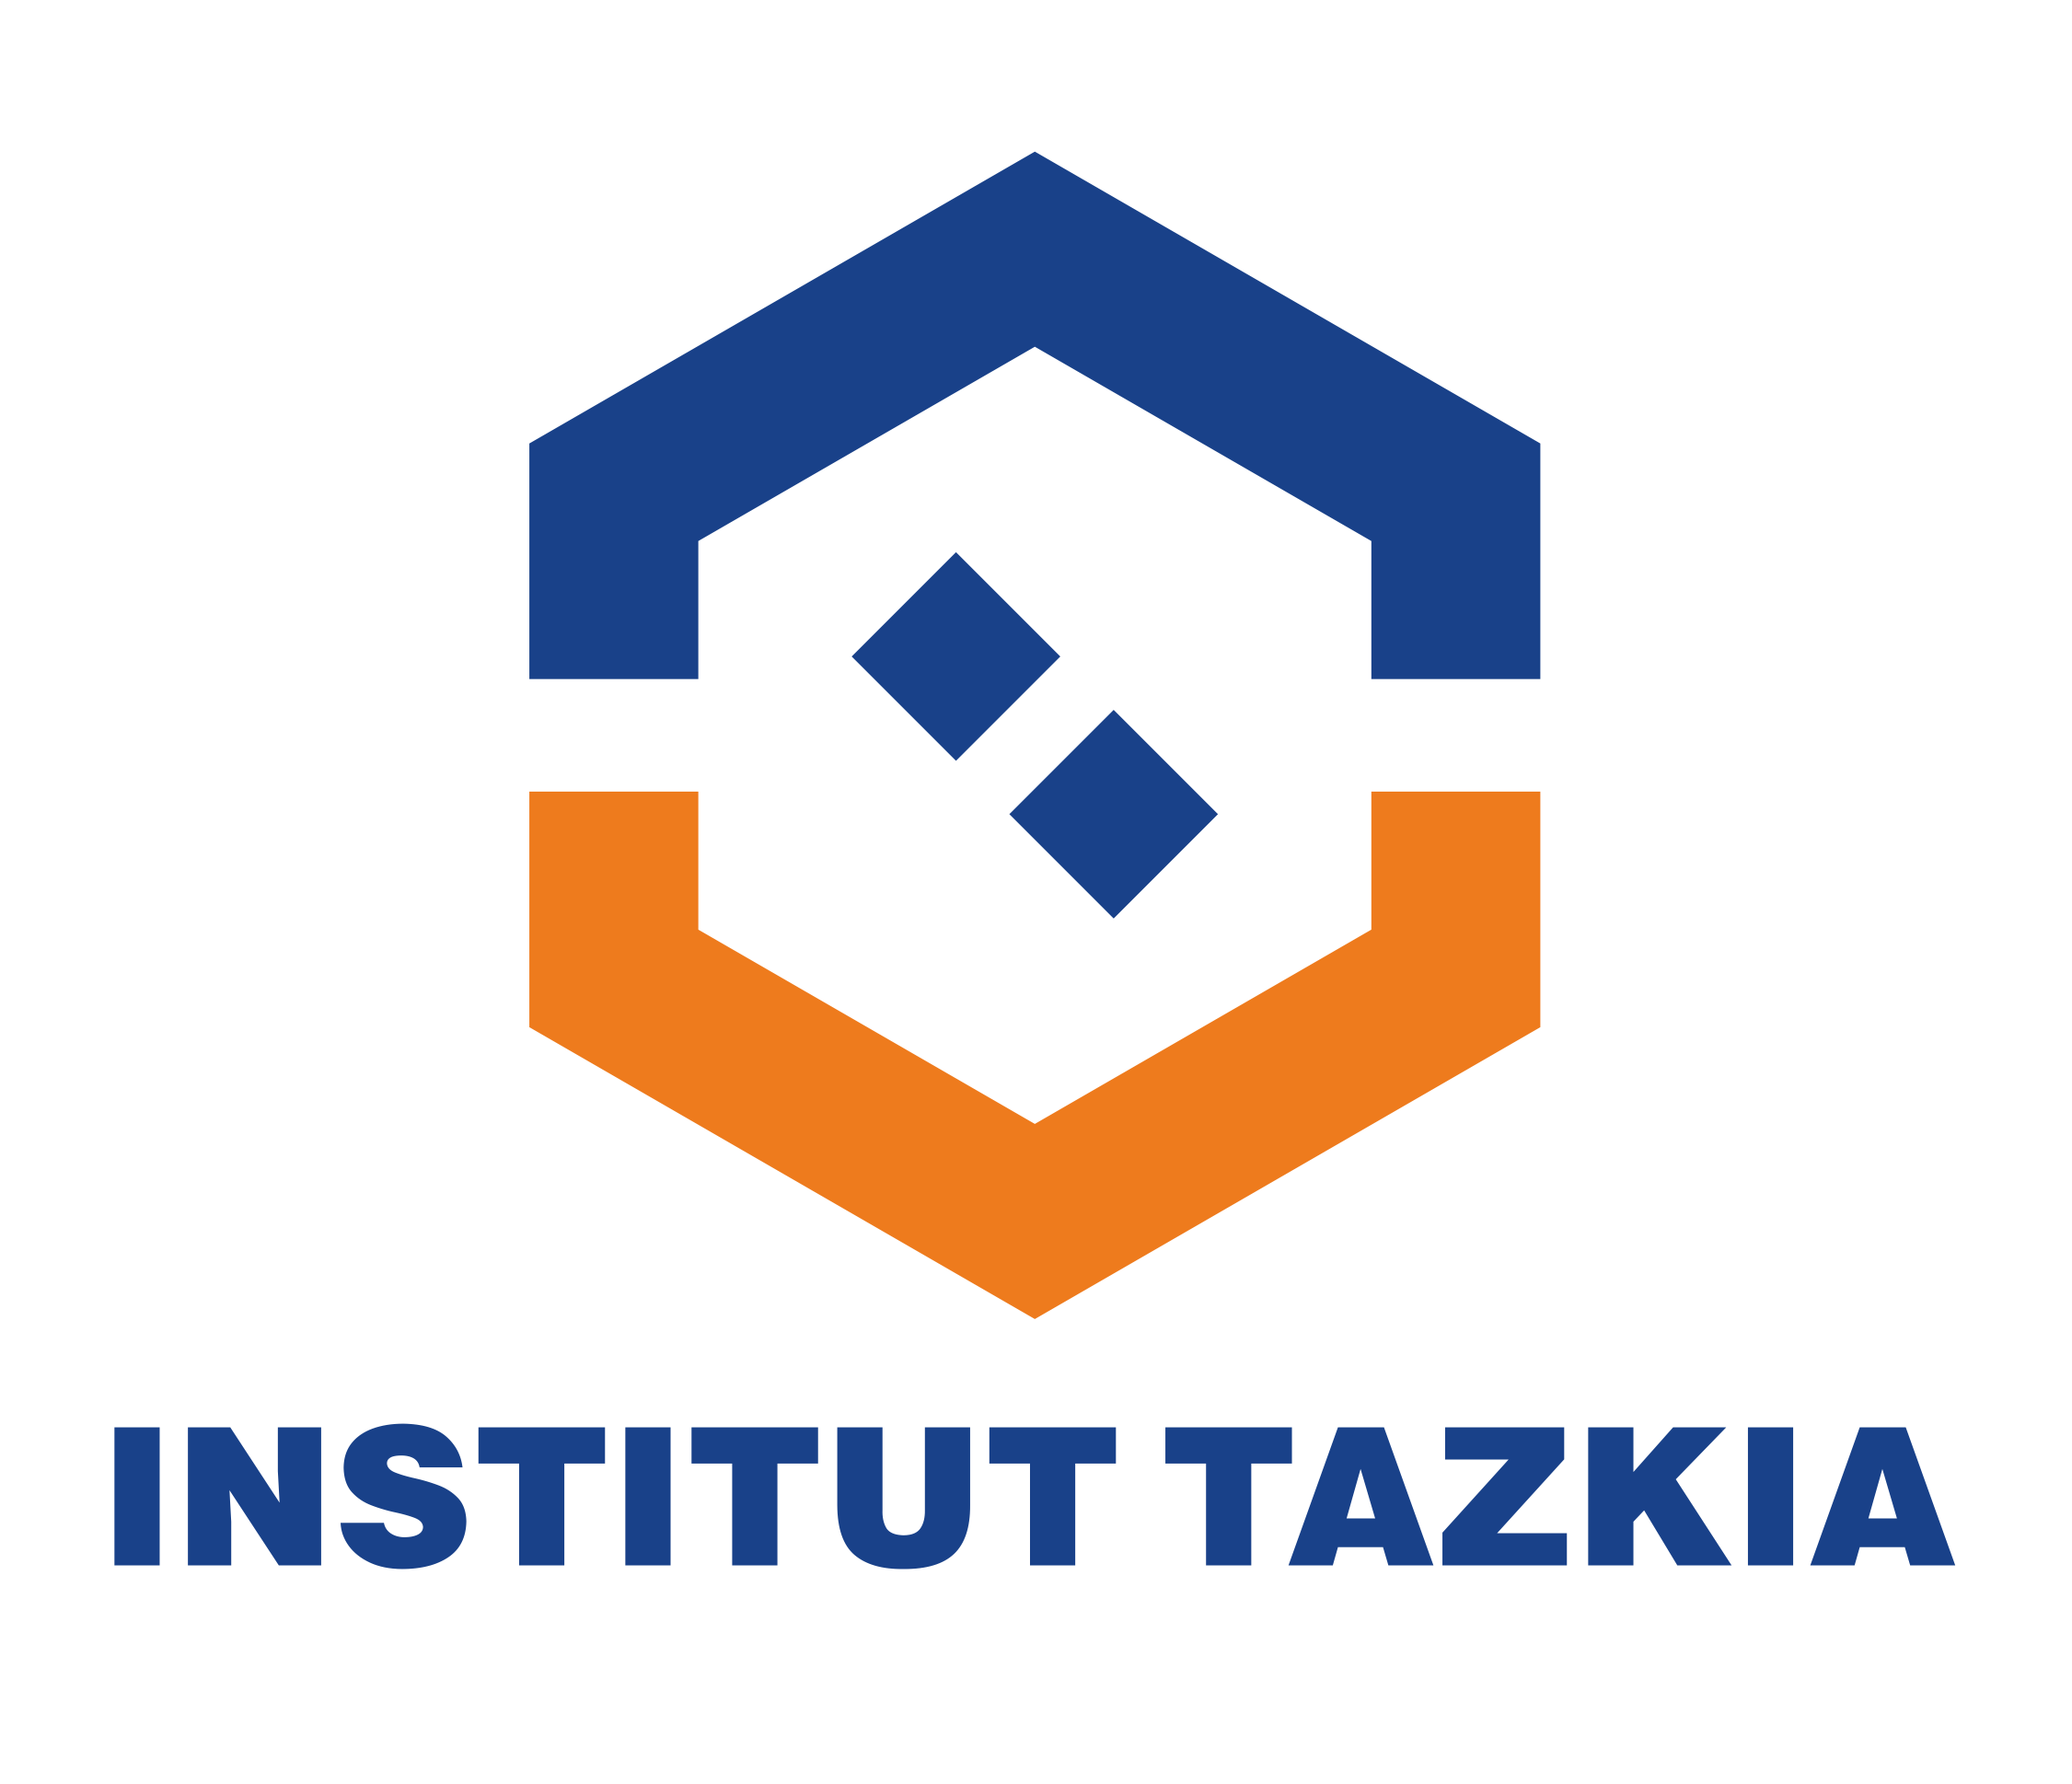 Tazkia Value